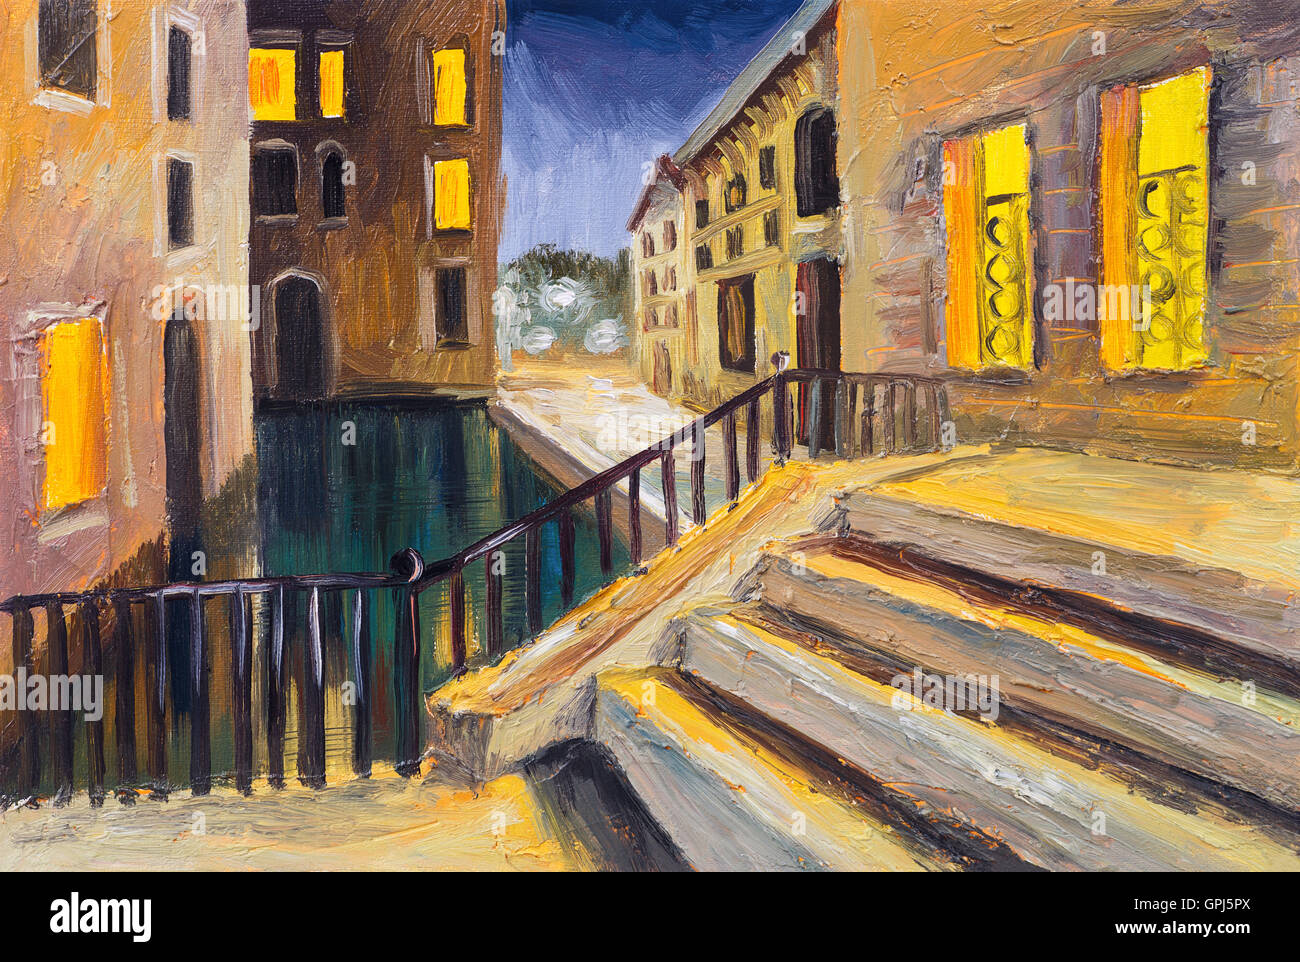 Peinture à l'huile, canal in Venice, Italie, célèbre lieu touristique, l'impressionnisme coloré Banque D'Images